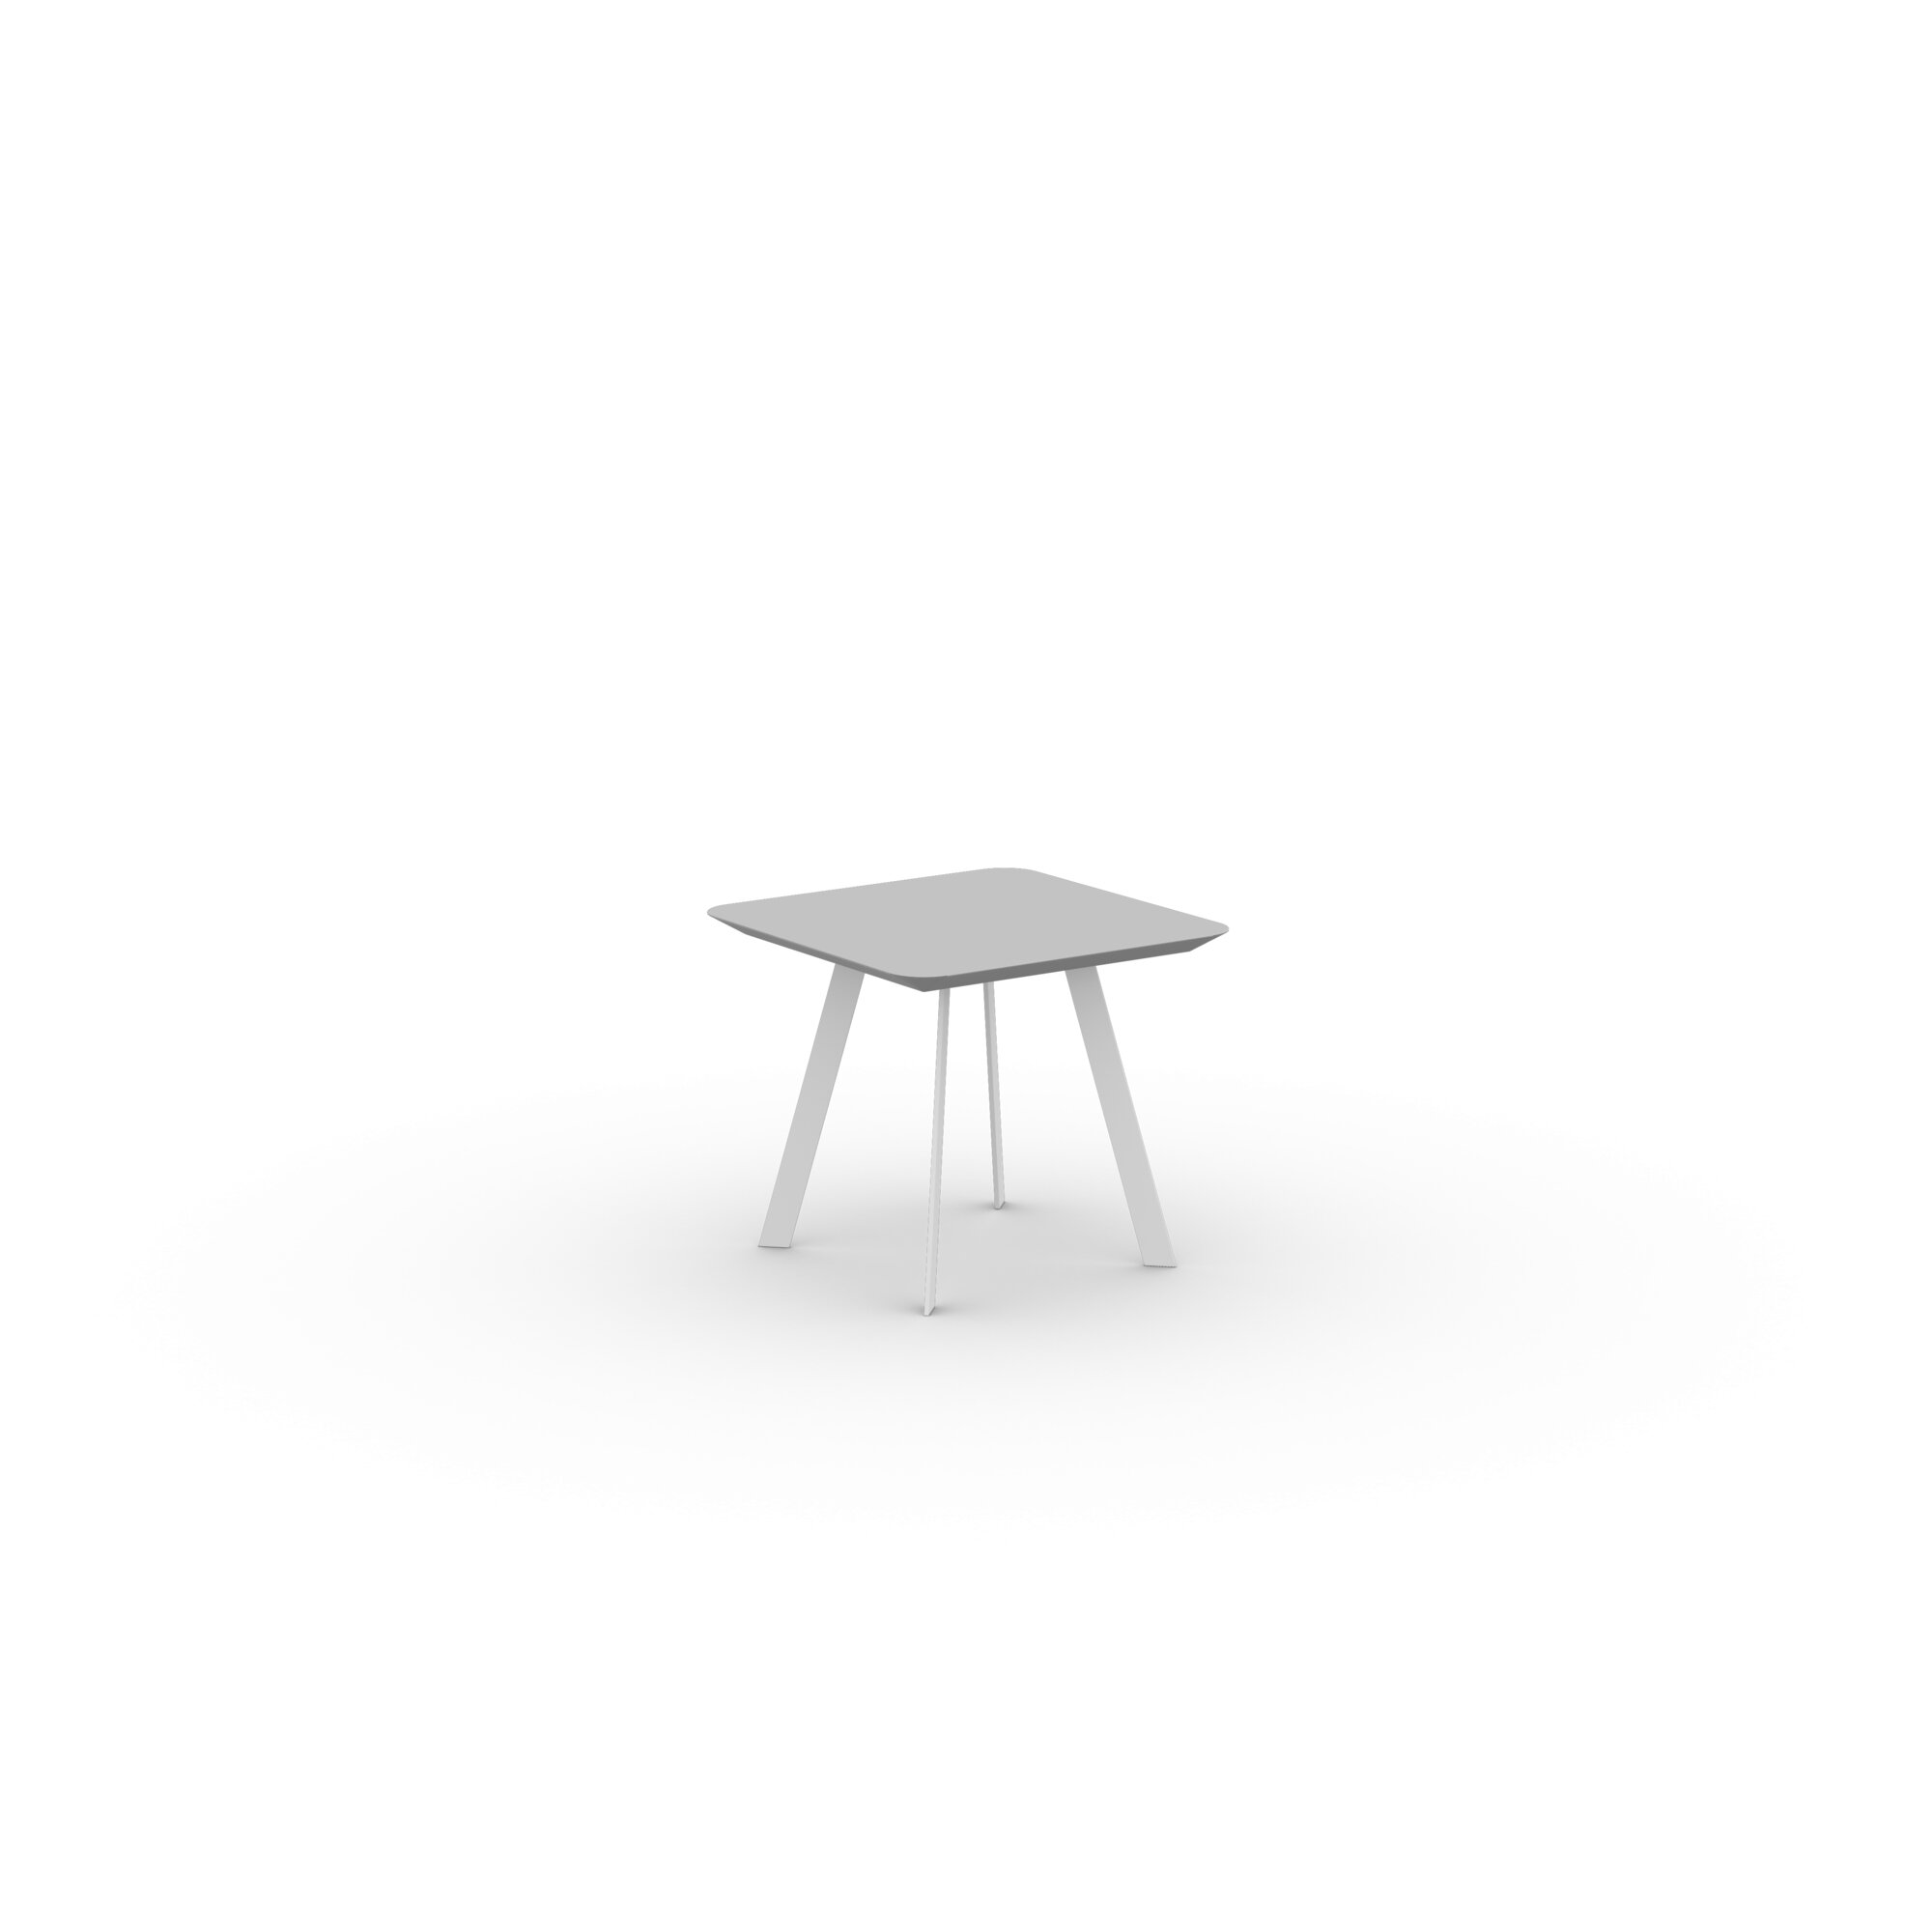 Design Coffee Table | New Co Coffee Table 50 Square White | HPL Fenix grigio efeso | Studio HENK| 